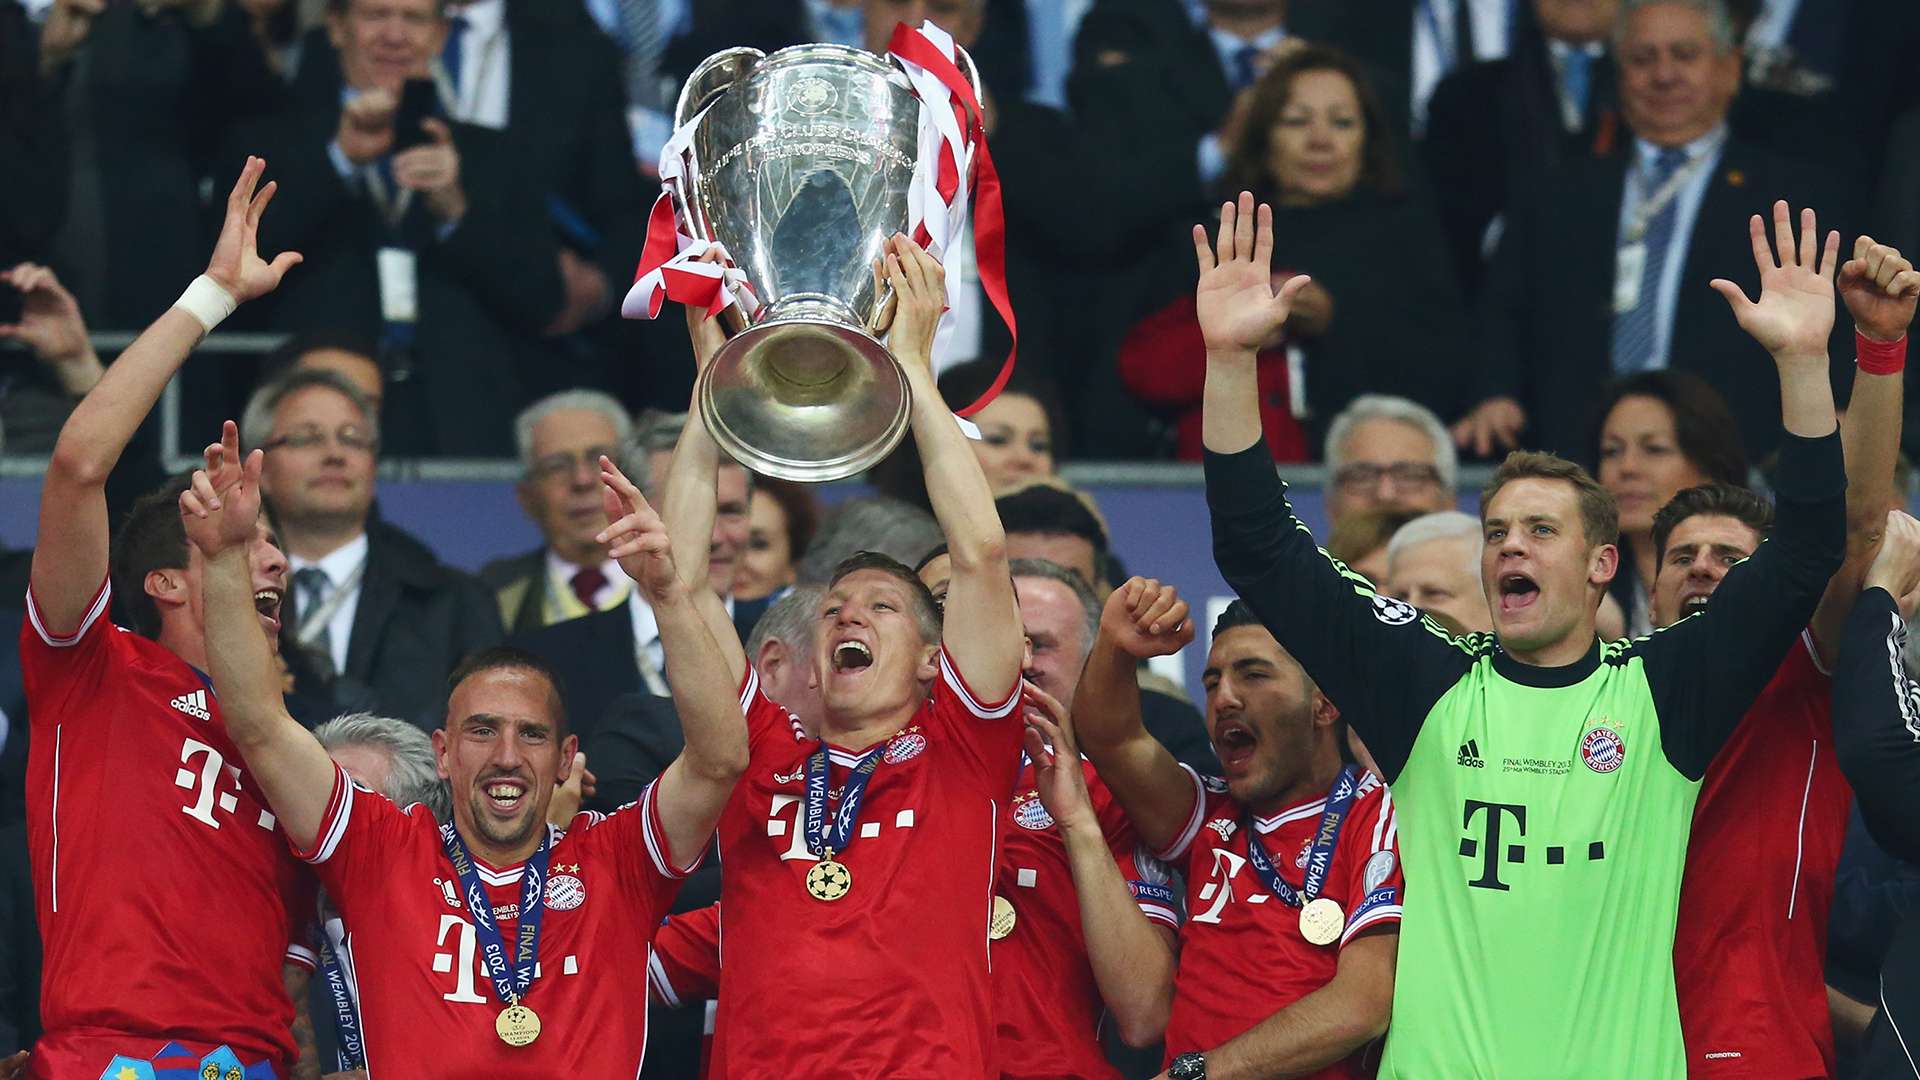 Bayern 2013 Champions League winners